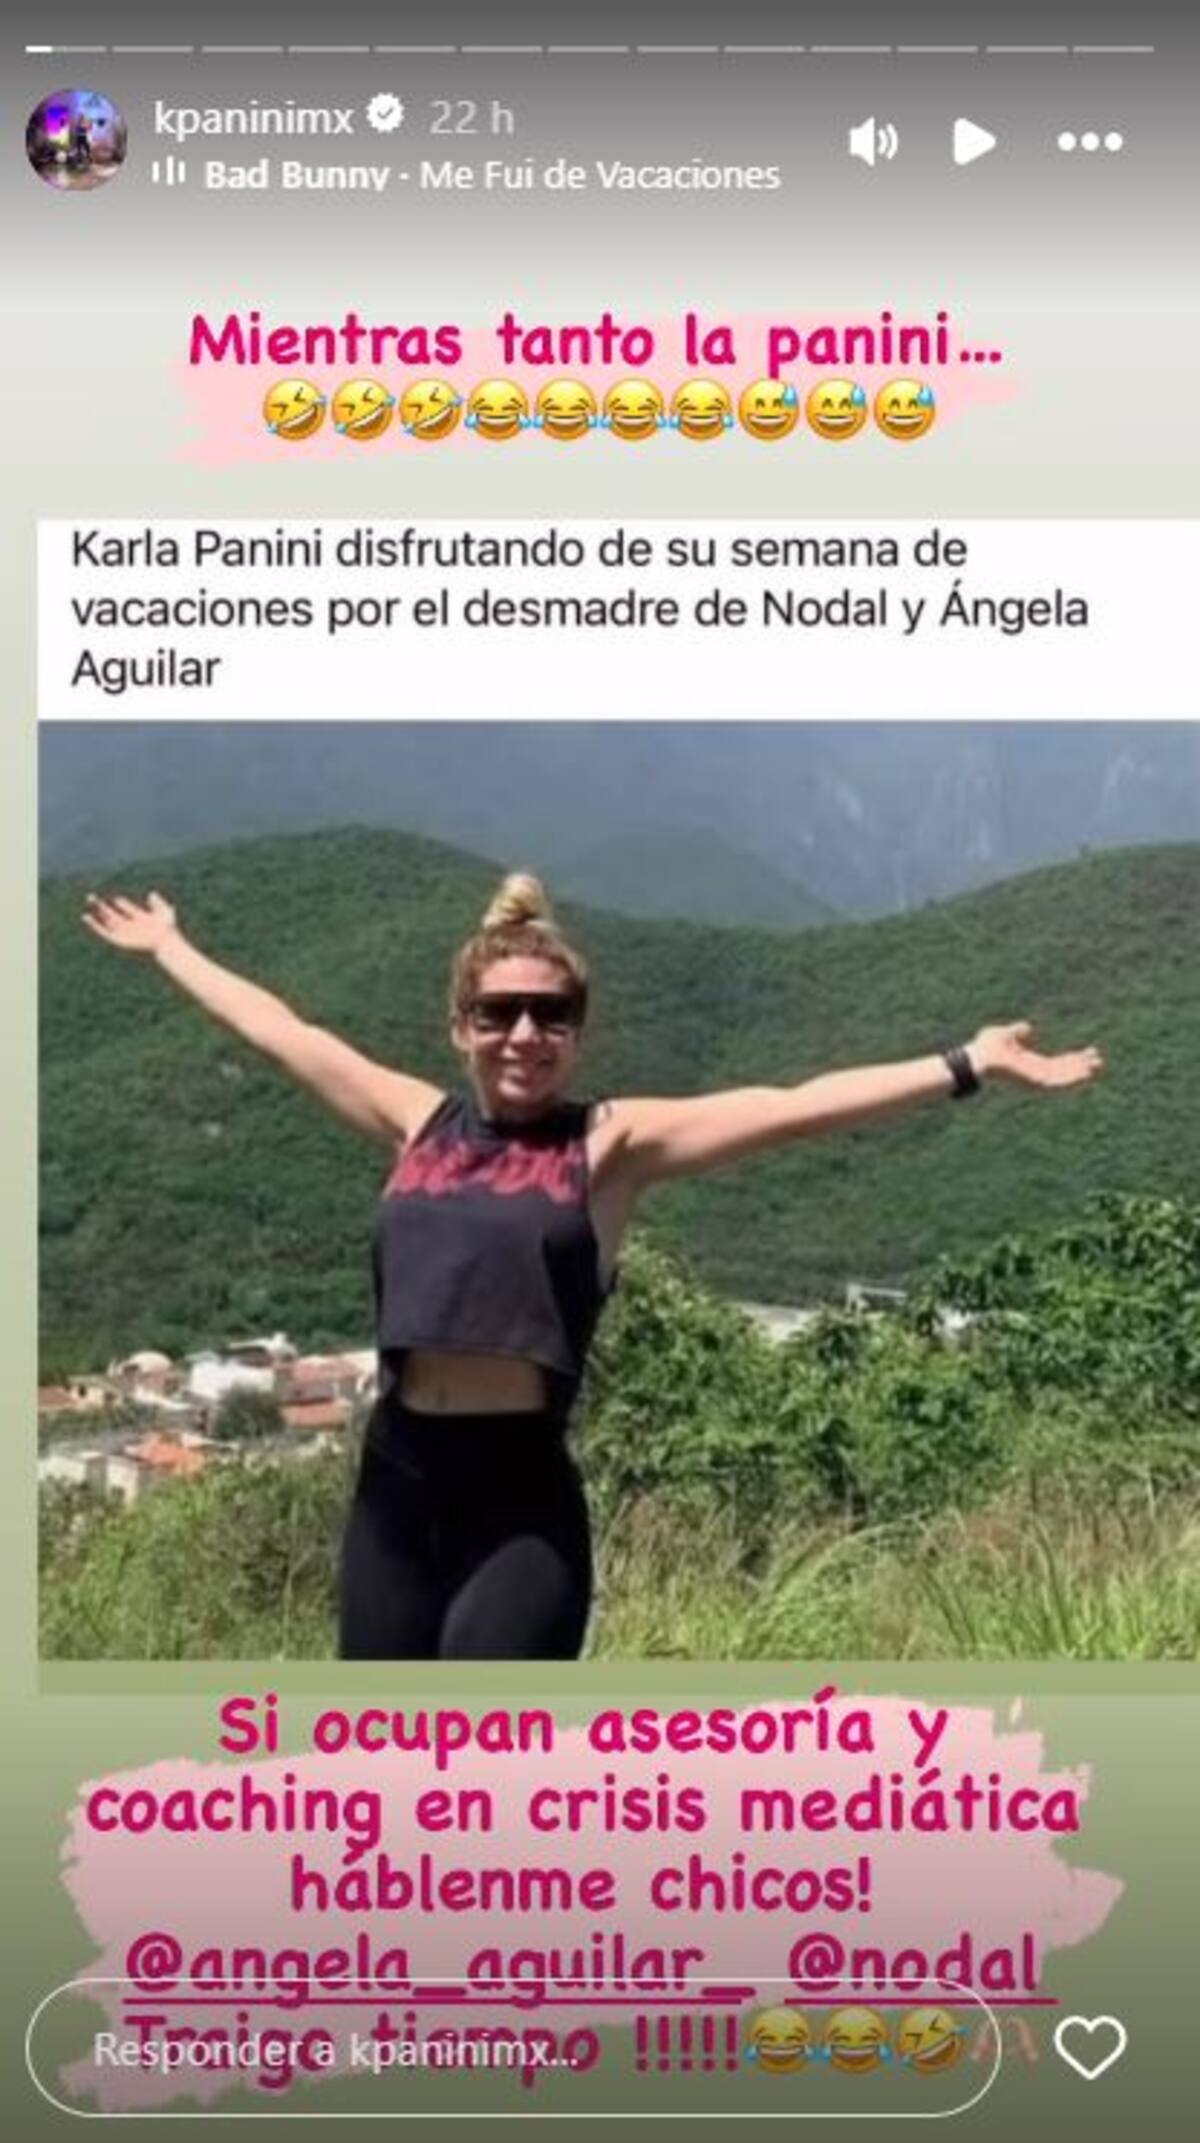 Karla Panini ofrece ayuda a Nodal y Ángela Aguilar tras comparaciones en redes sociales | Captura de pantalla